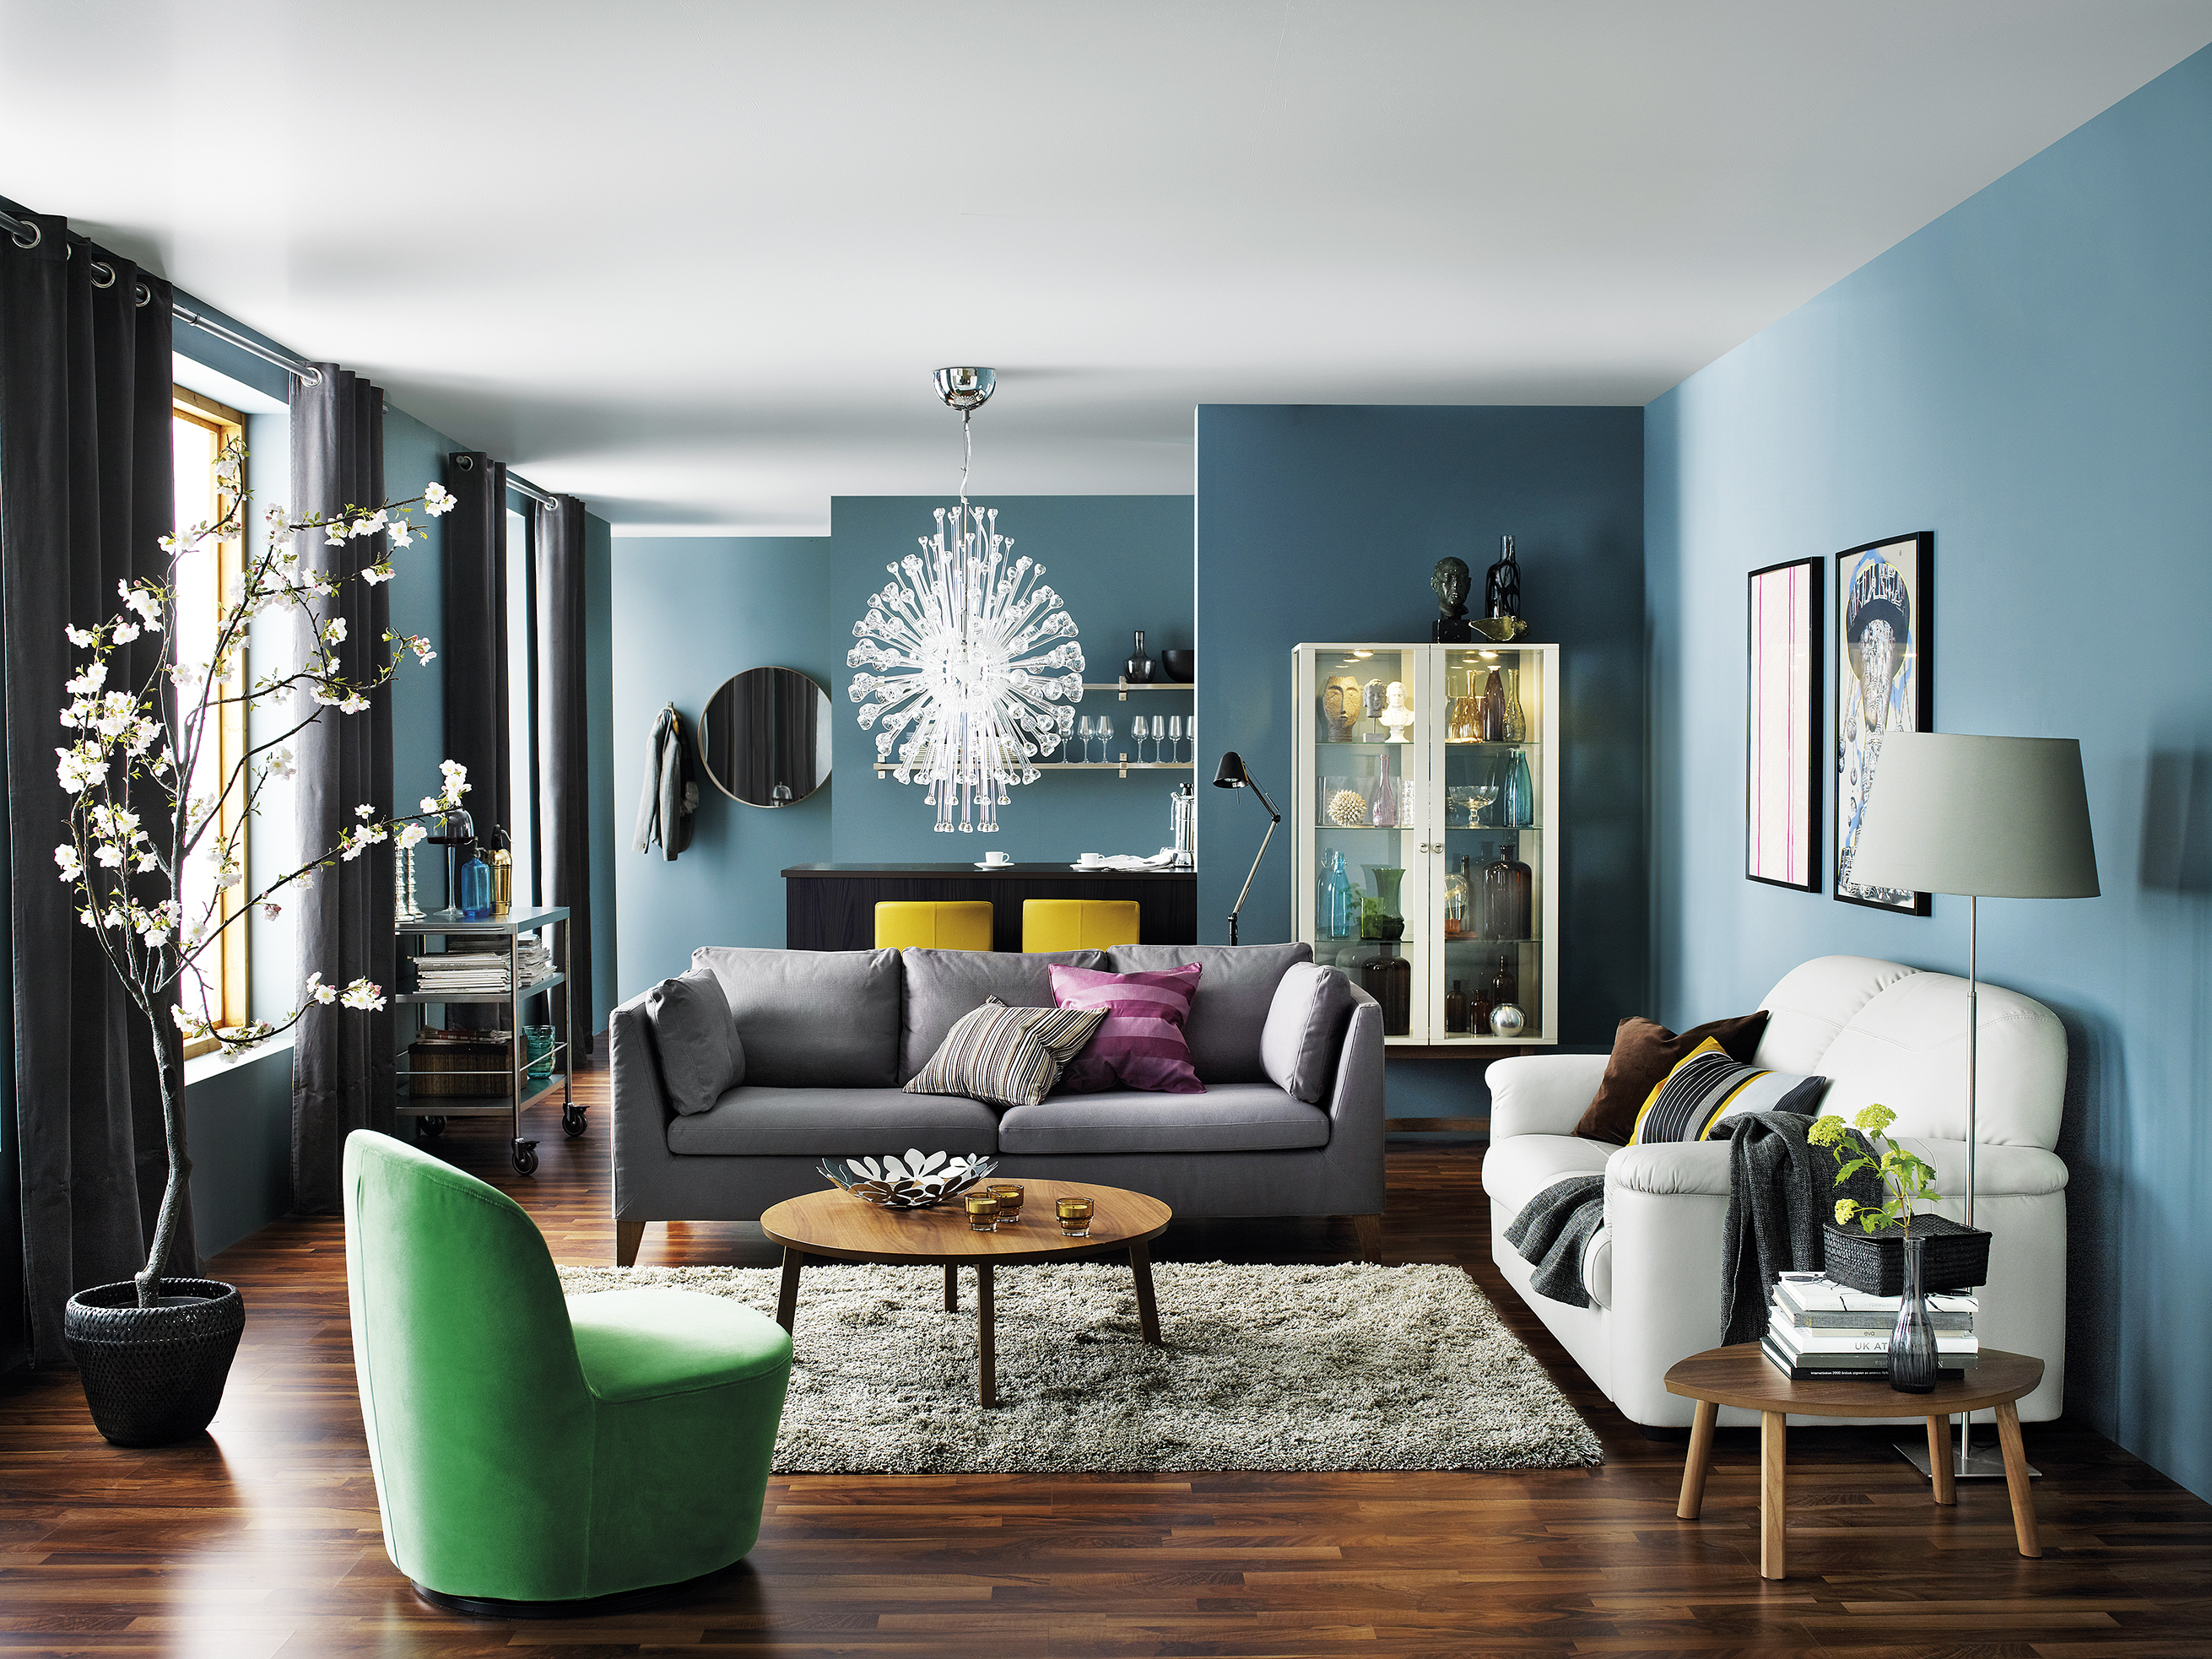 스칸디나비아 스타일 벽지,거실,가구,방,인테리어 디자인,특성